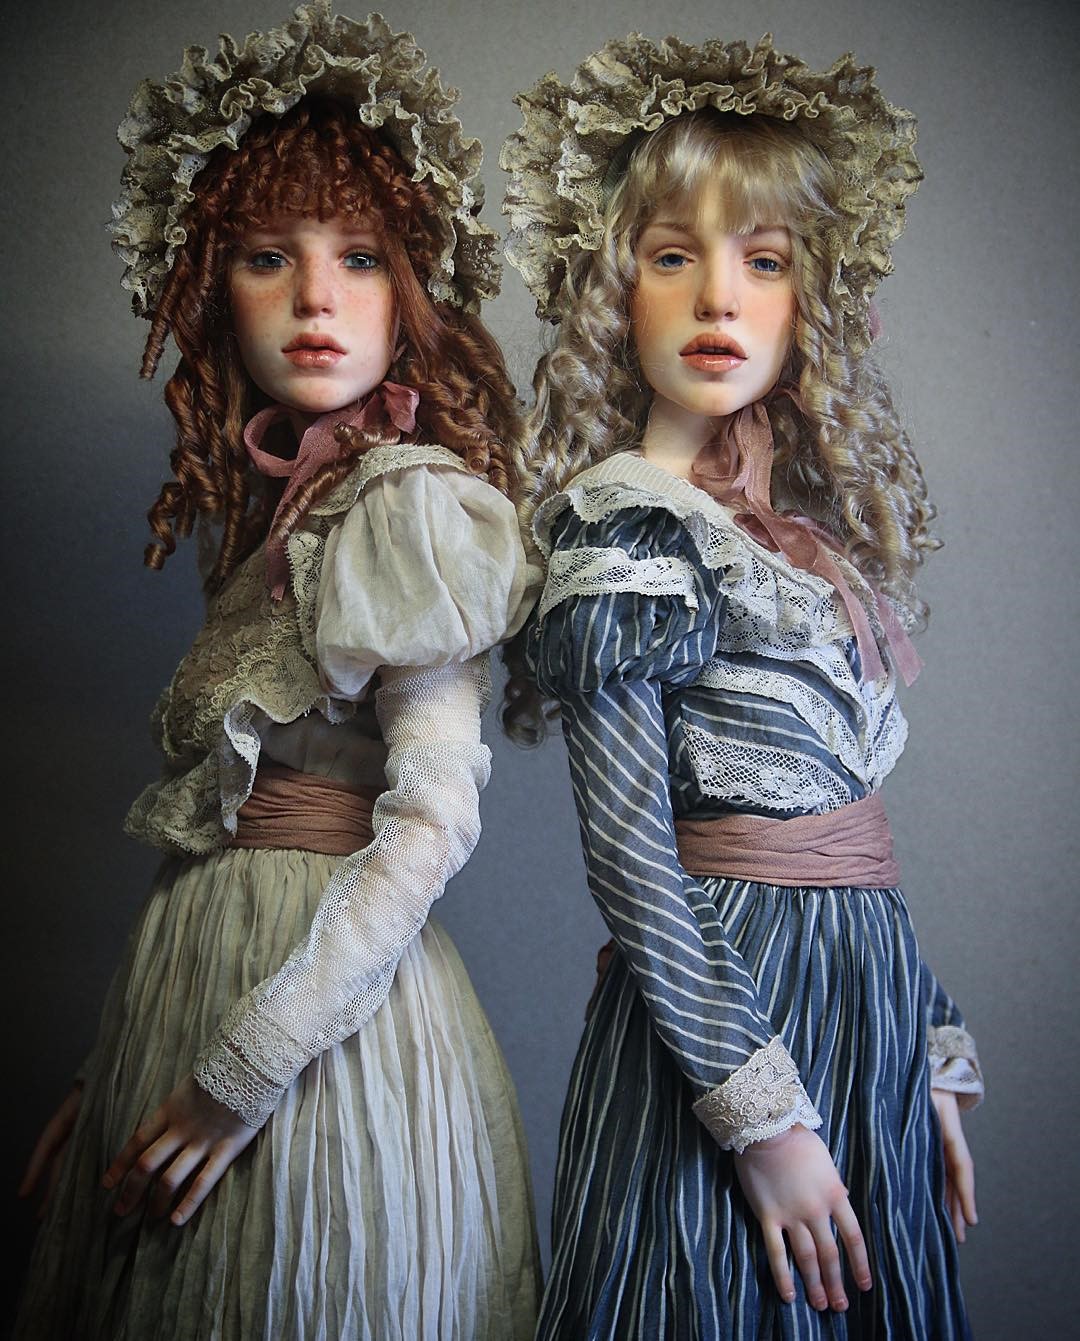 Скульптор создаёт невероятно реалистичные куклы, которые словно из другой эпохи: утончённые и загадочные